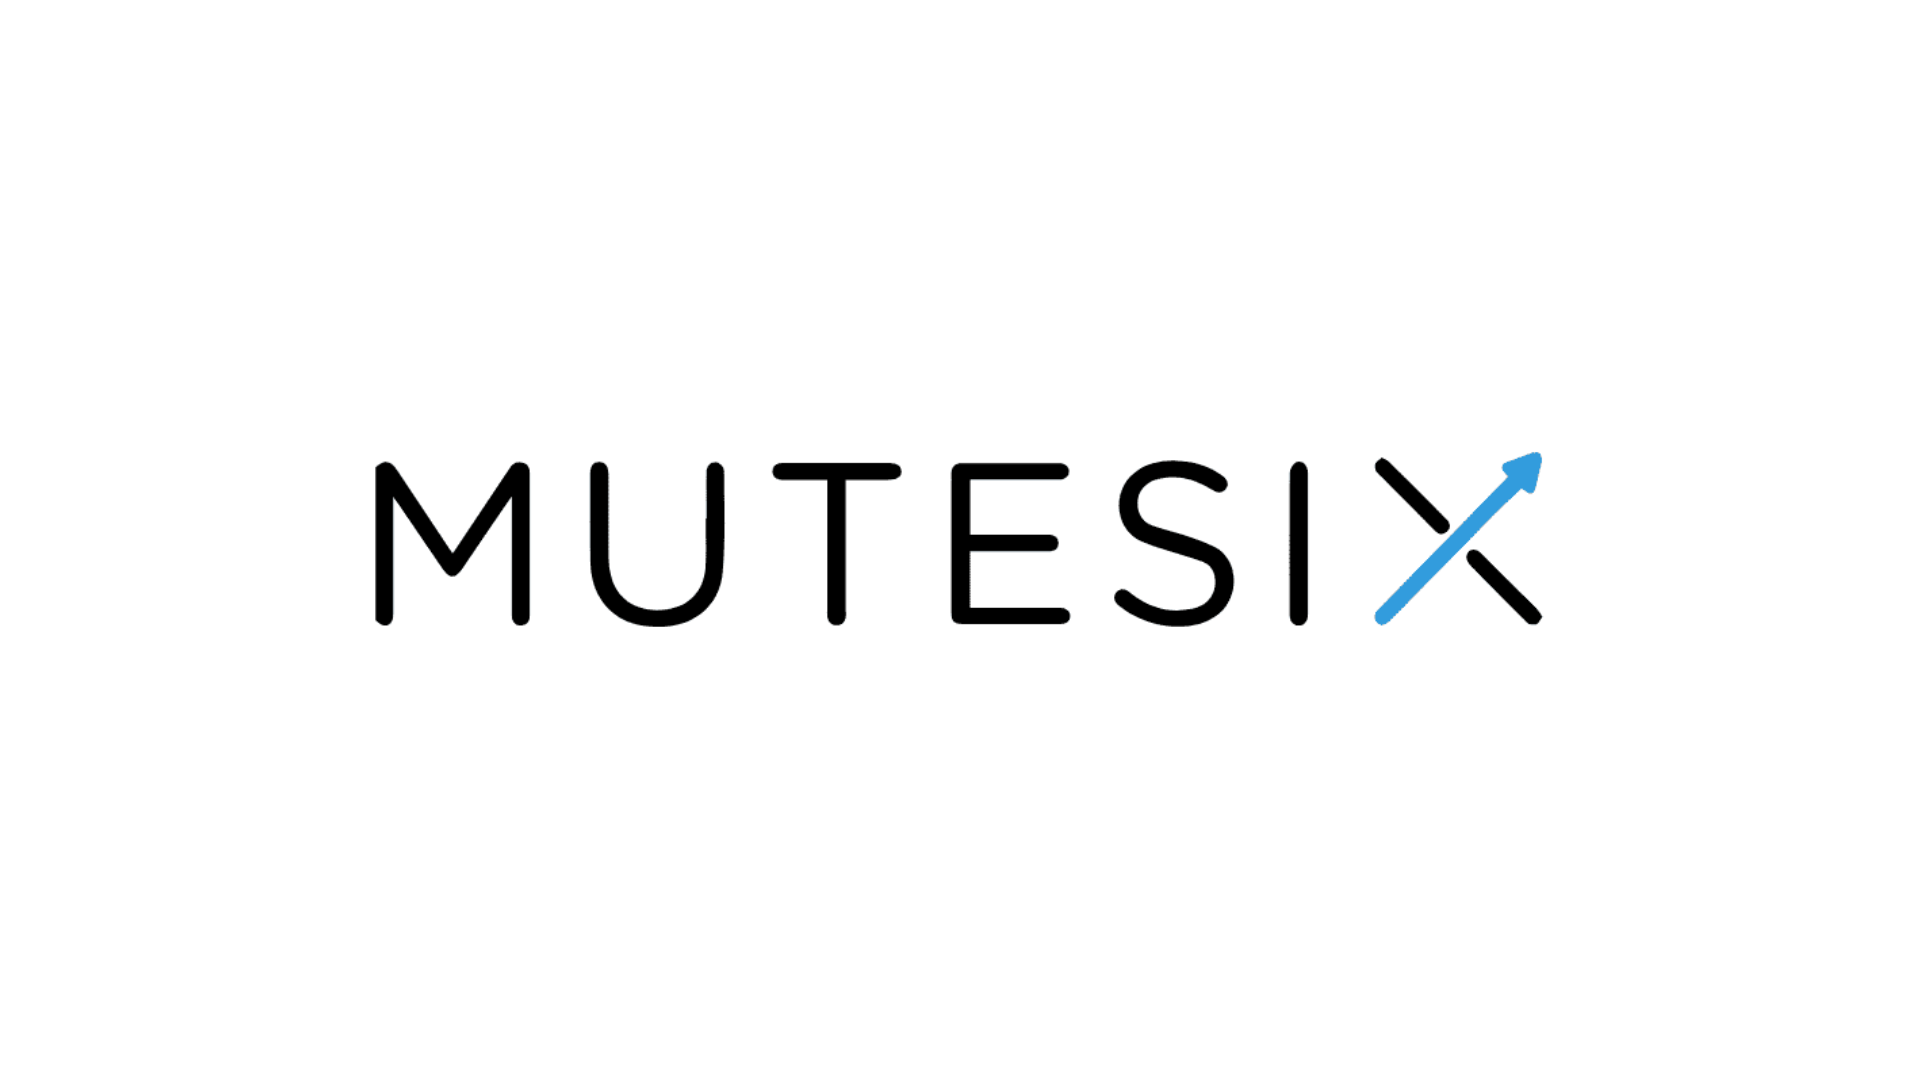 MUTESIX logo